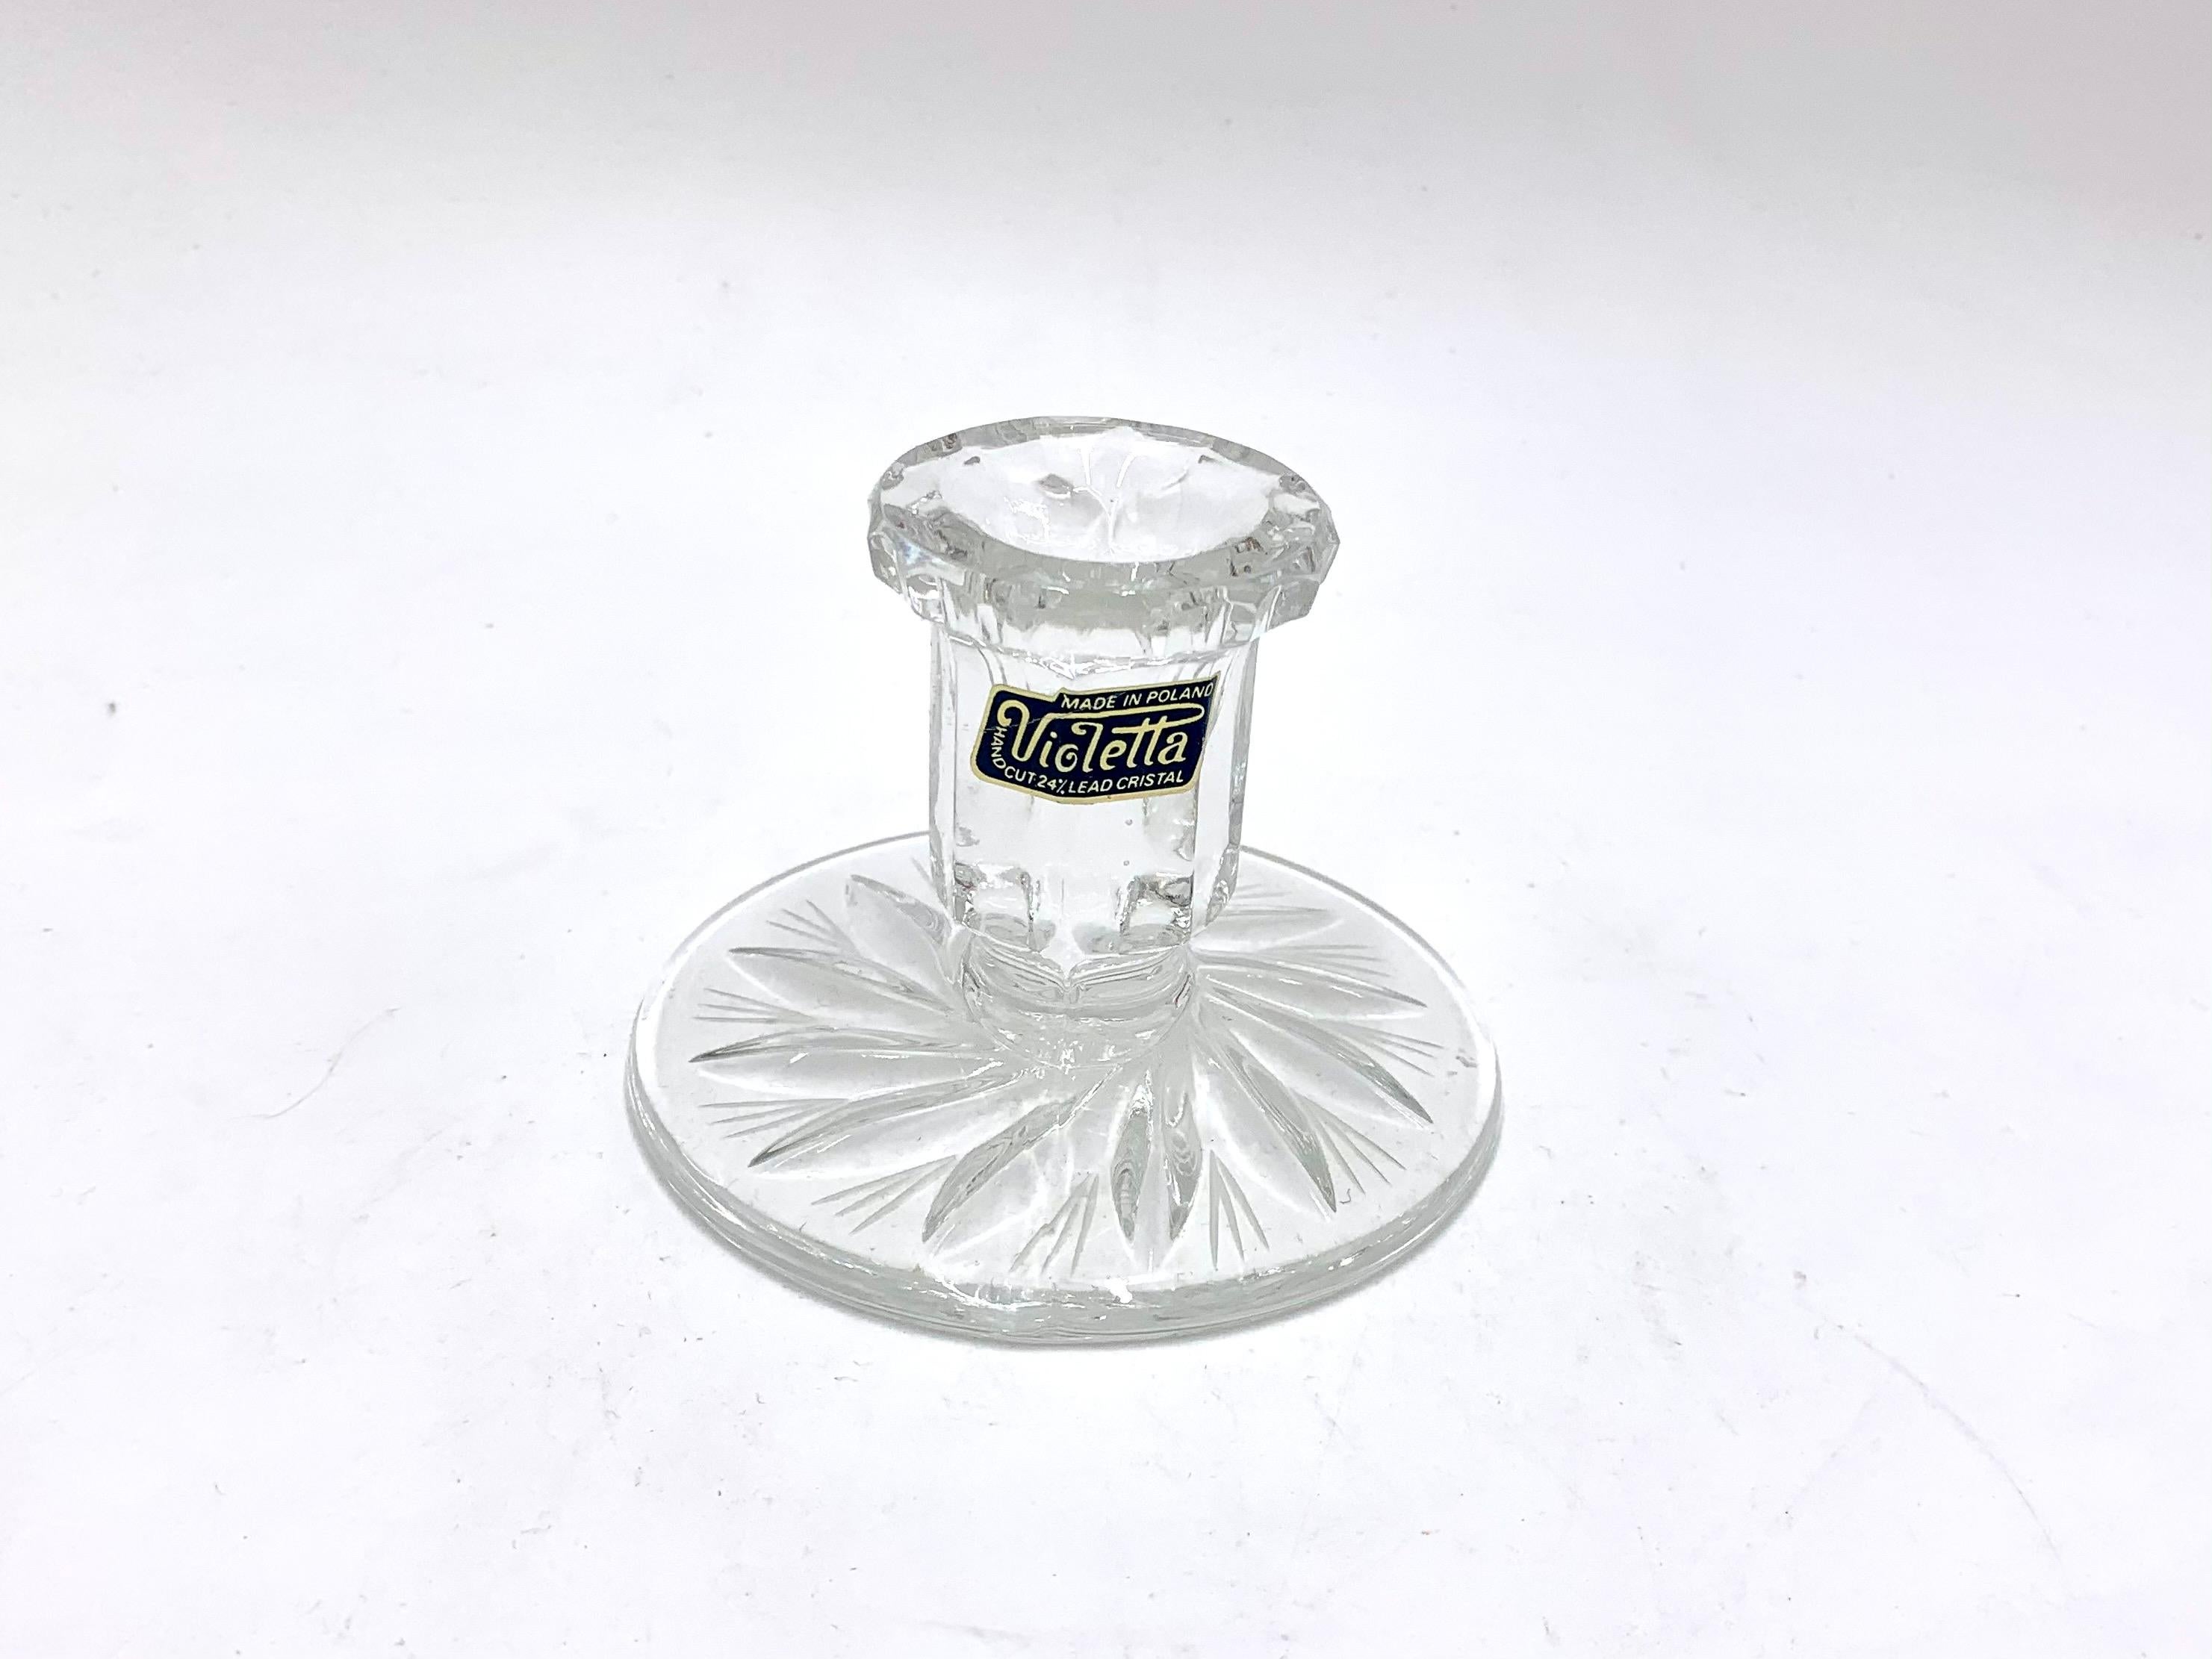 Kristallklarer Kerzenleuchter, Violetta, Polen
Erhaltene Original-Krankheit
Produziert in den 1970-1980er Jahren. 
Maße: Höhe 7cm Durchmesser 10cm.